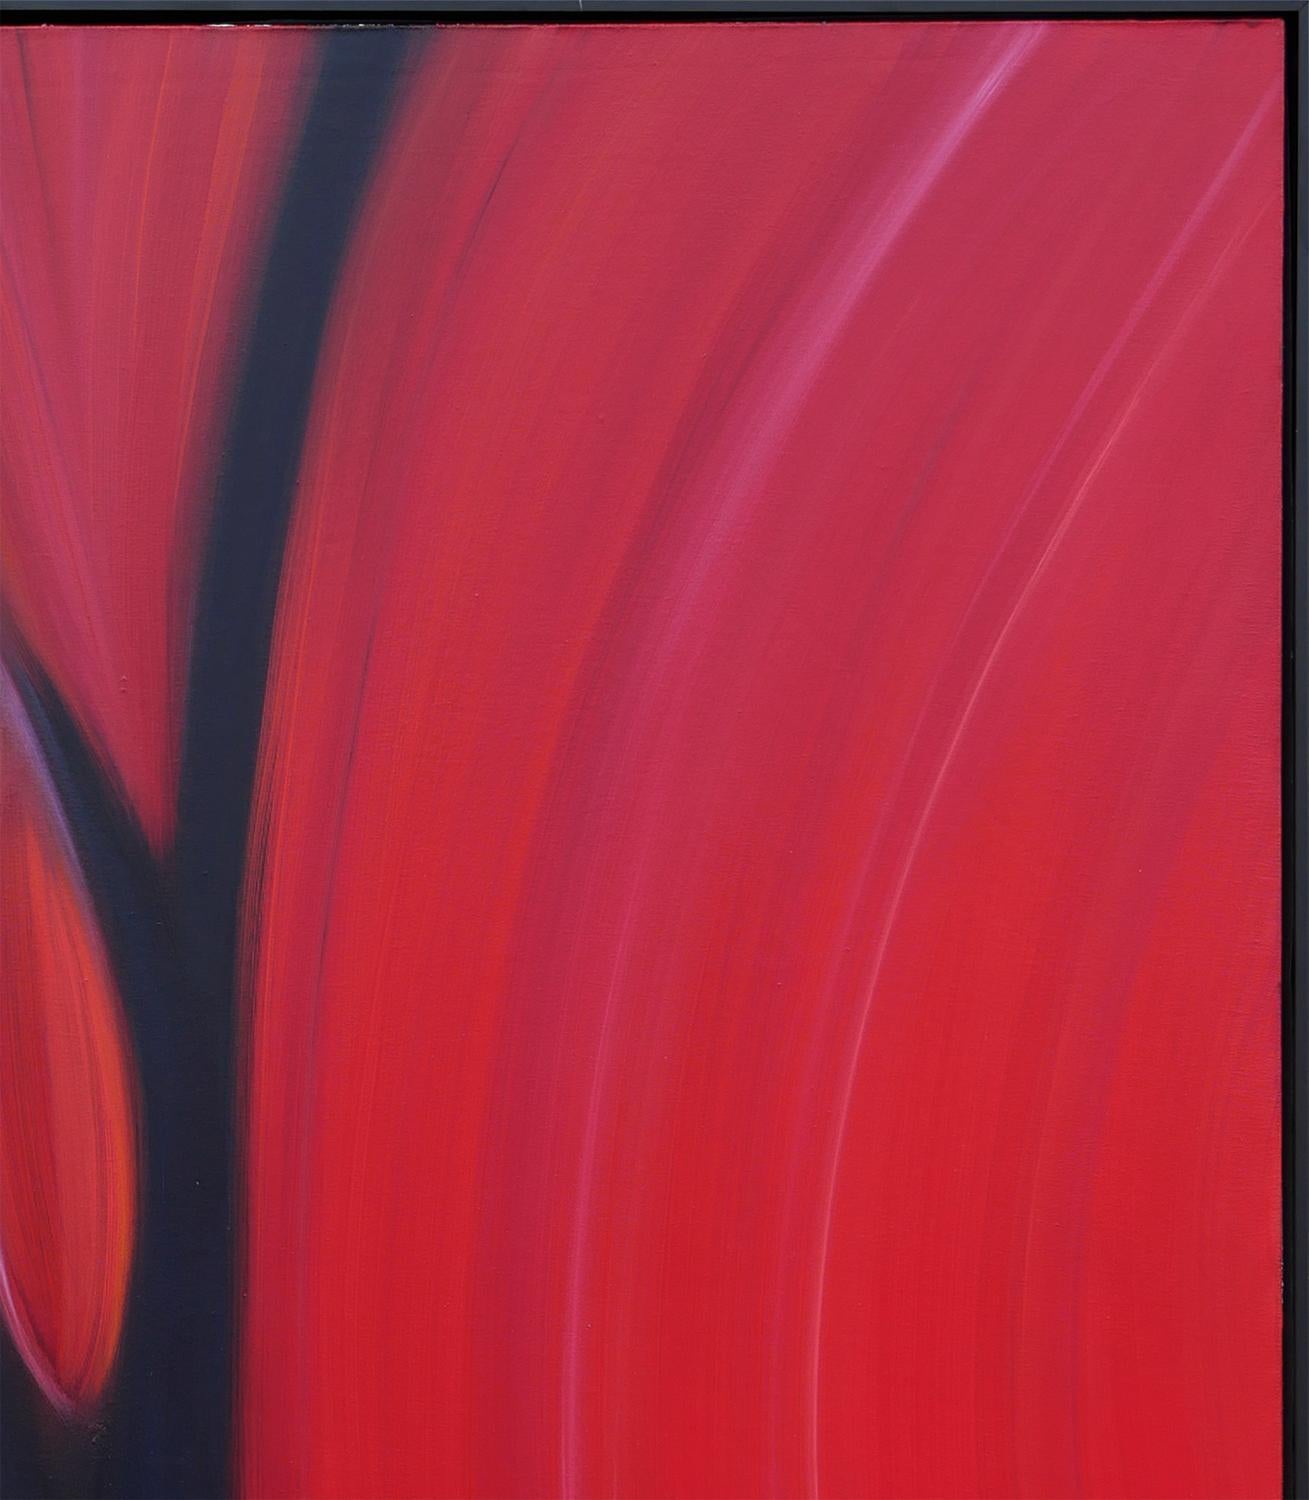 Rotes und schwarzes abstraktes zeitgenössisches Gemälde der Künstlerin Cheryl Kelley aus Santa Fe, NM. Dieses großformatige Werk zeigt ein fließendes abstraktes Farbfeld aus leuchtenden Rot- und dunklen Violetttönen, die in Schwarz übergehen. Nicht